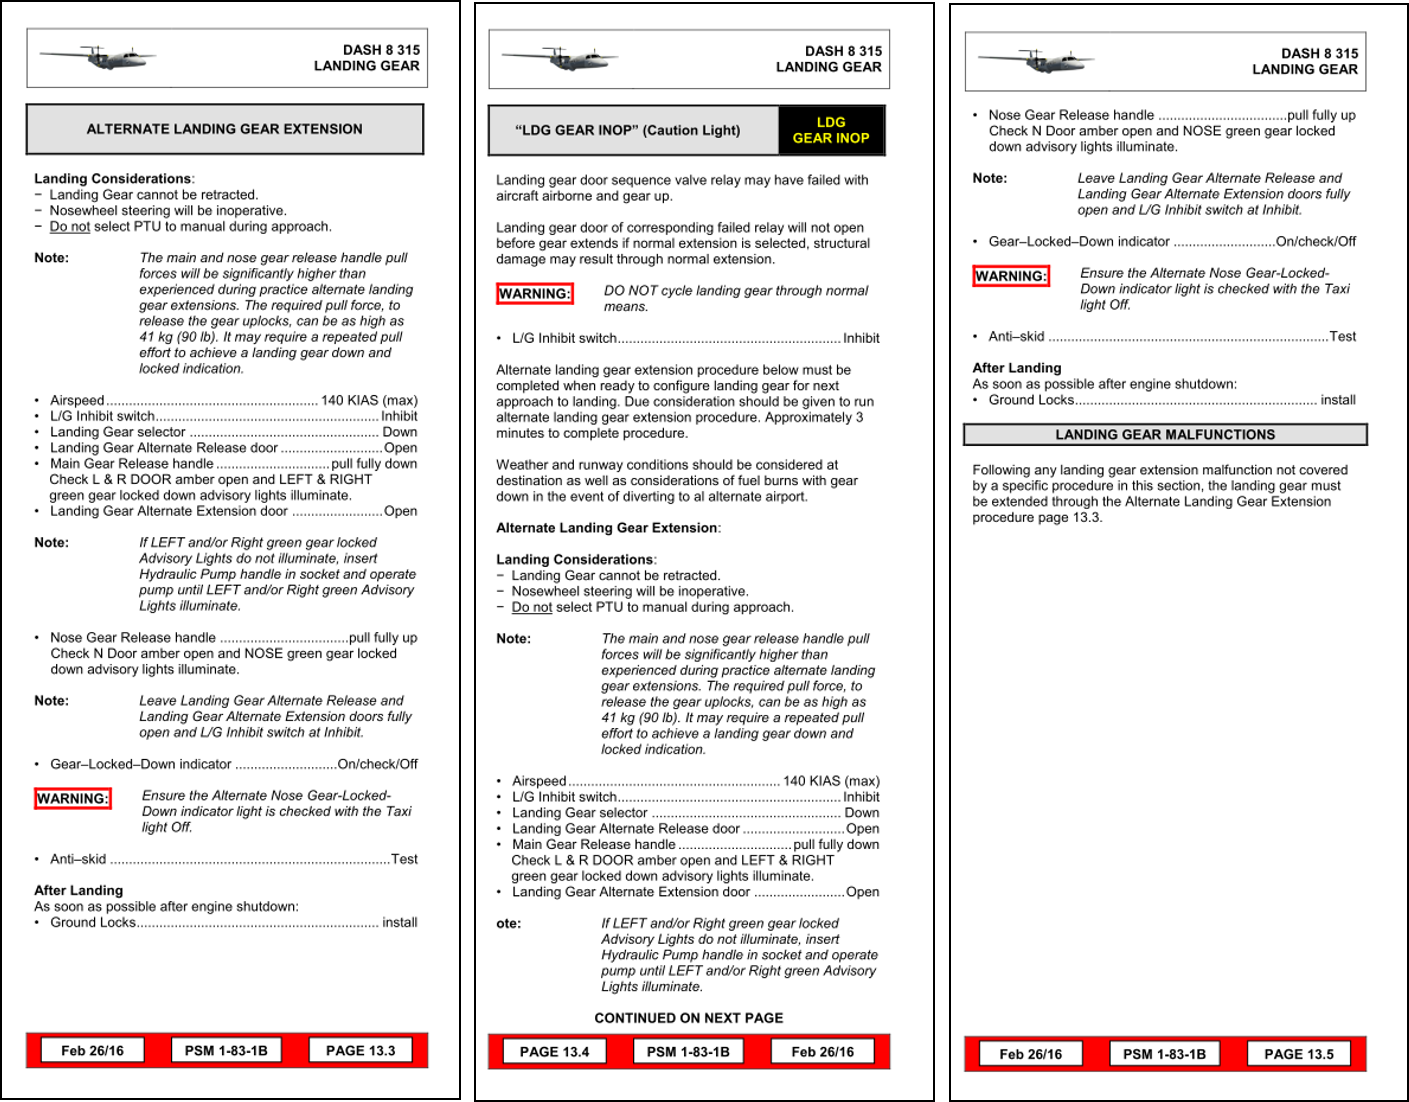 Manuel de référence rapide pour l’avion Dash 8 – Listes de vérification ALTERNATE LANDING GEAR EXTENSION (circuit de secours de sortie du train d’atterrissage) et LDG GEAR INOP (train d’atterrissage non fonctionnel)